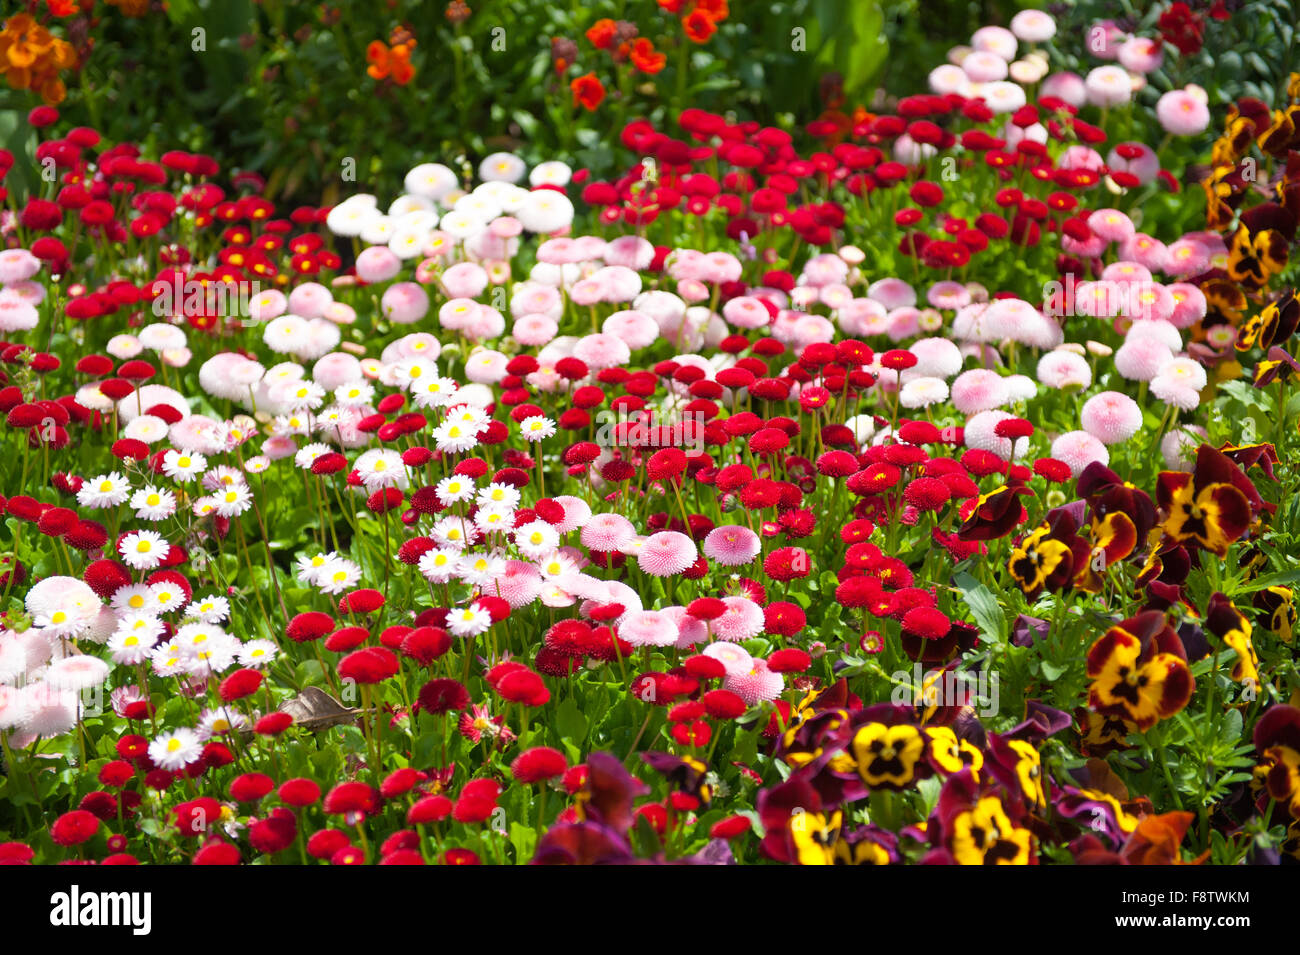 Bellis flowers in the garden Stock Photo